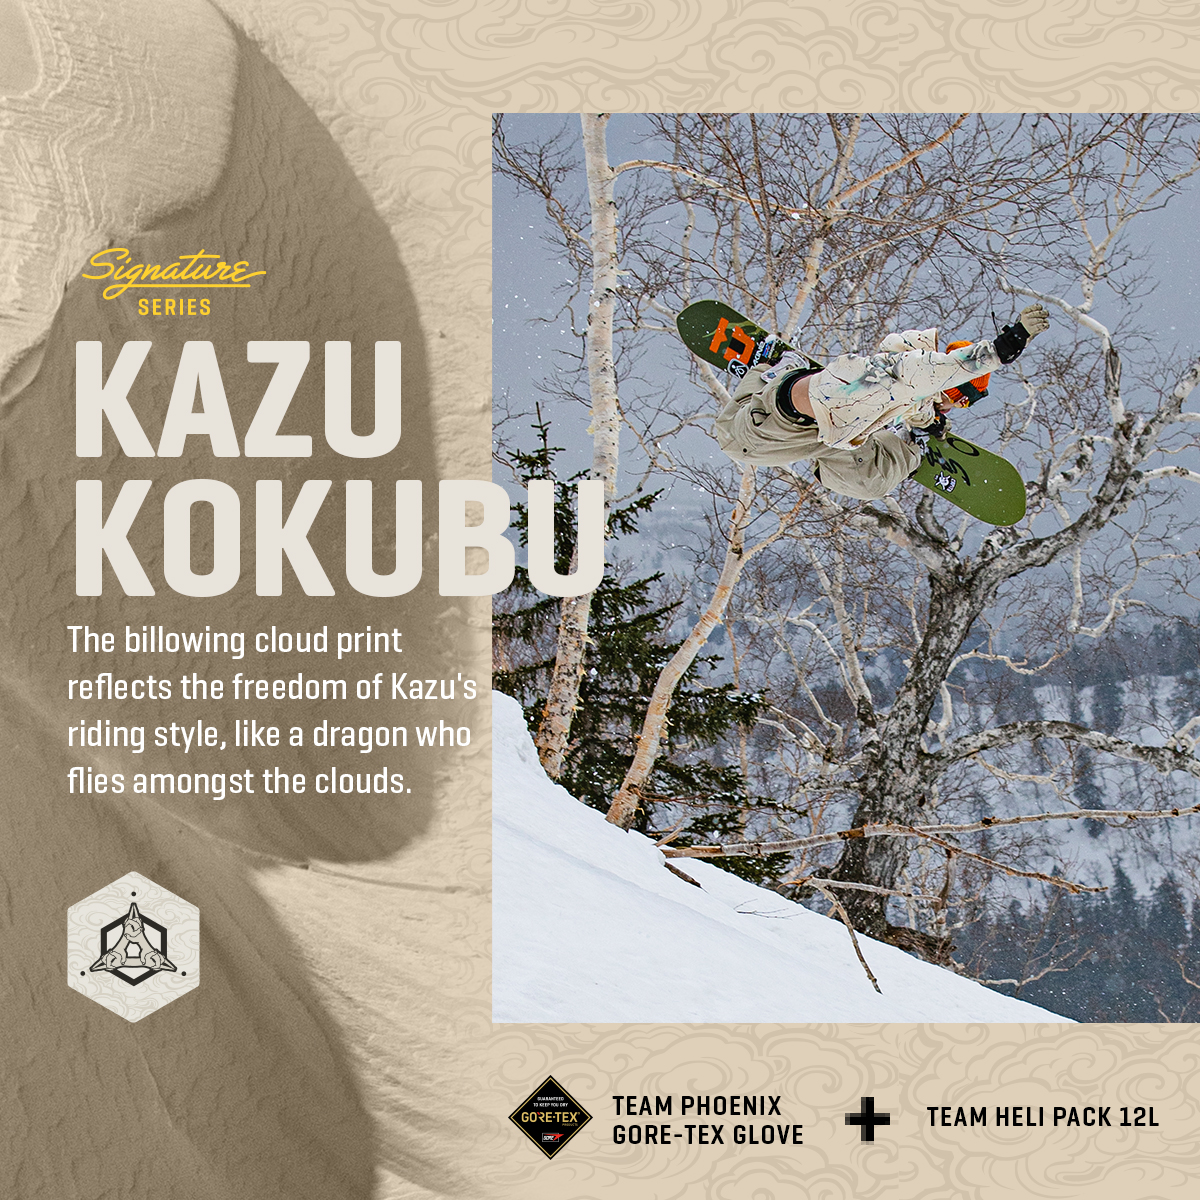 DAKINE launches Kazuhiro Kokubo's signature model snow pack and